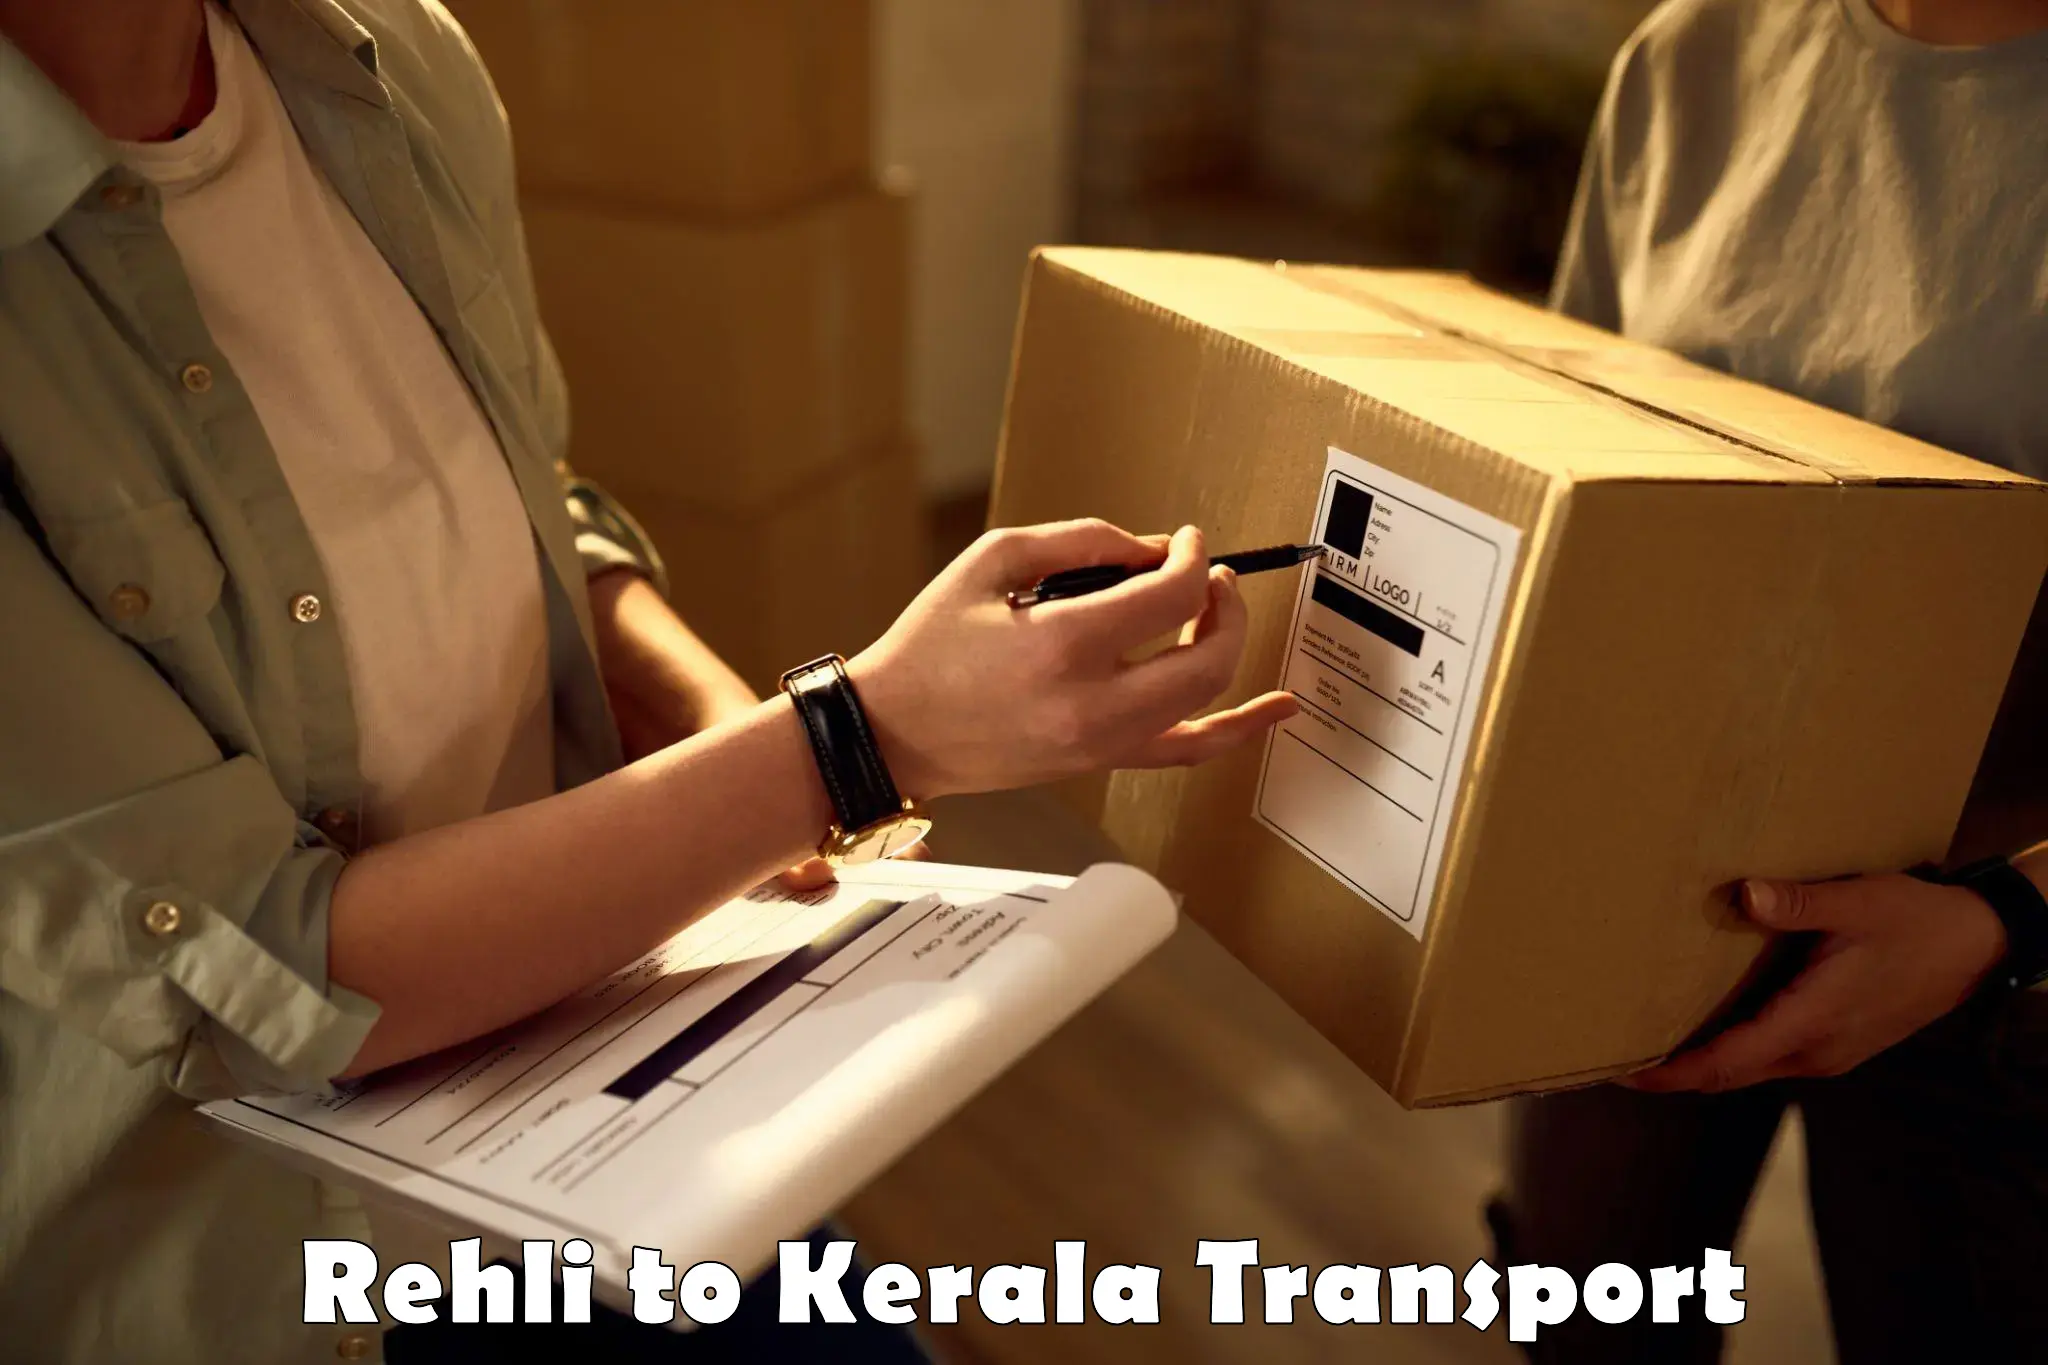 Two wheeler parcel service Rehli to Kazhakkoottam